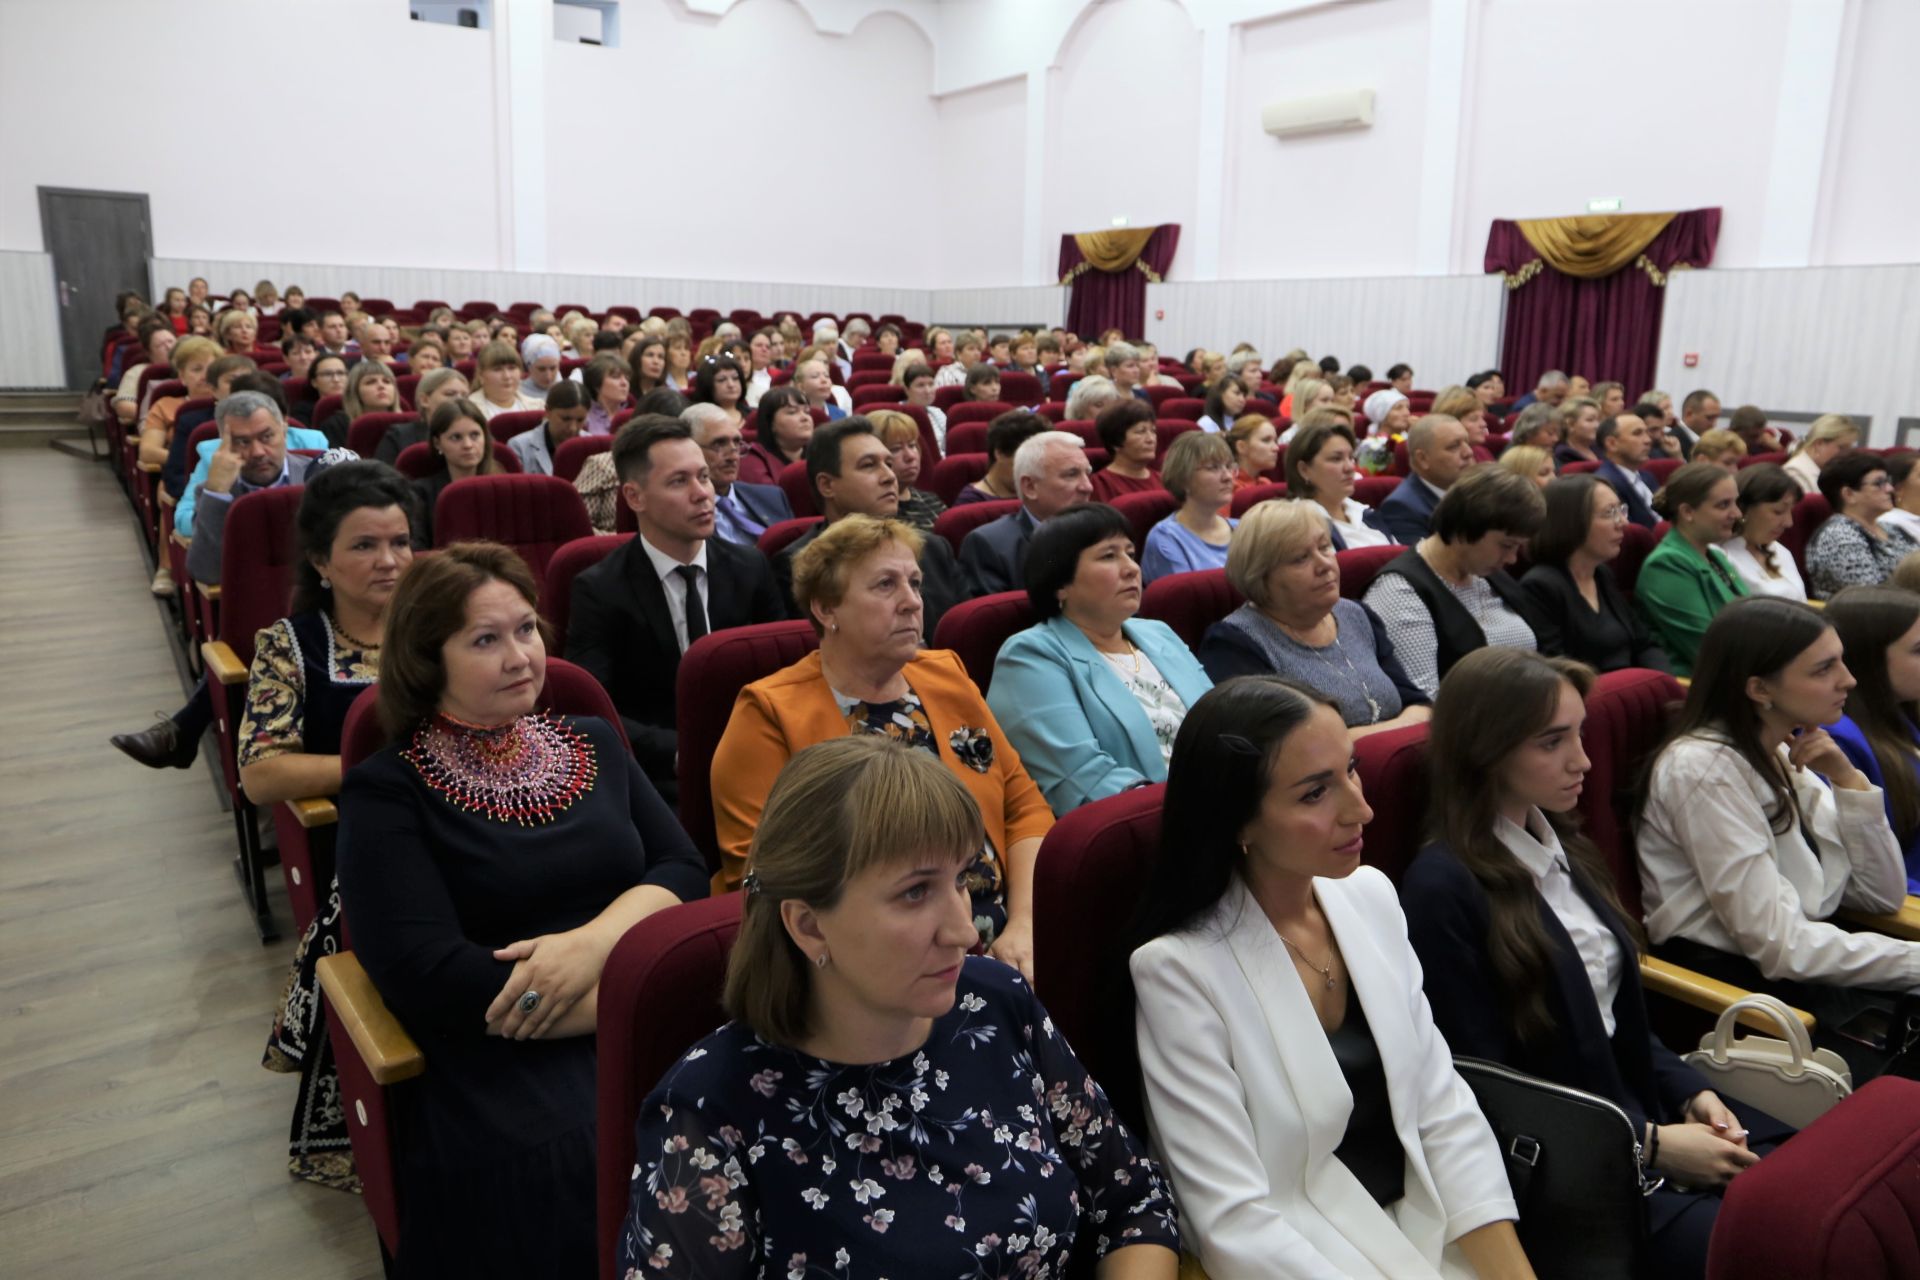 Педагогам Алексеевского района вручили награды и новые ноутбуки